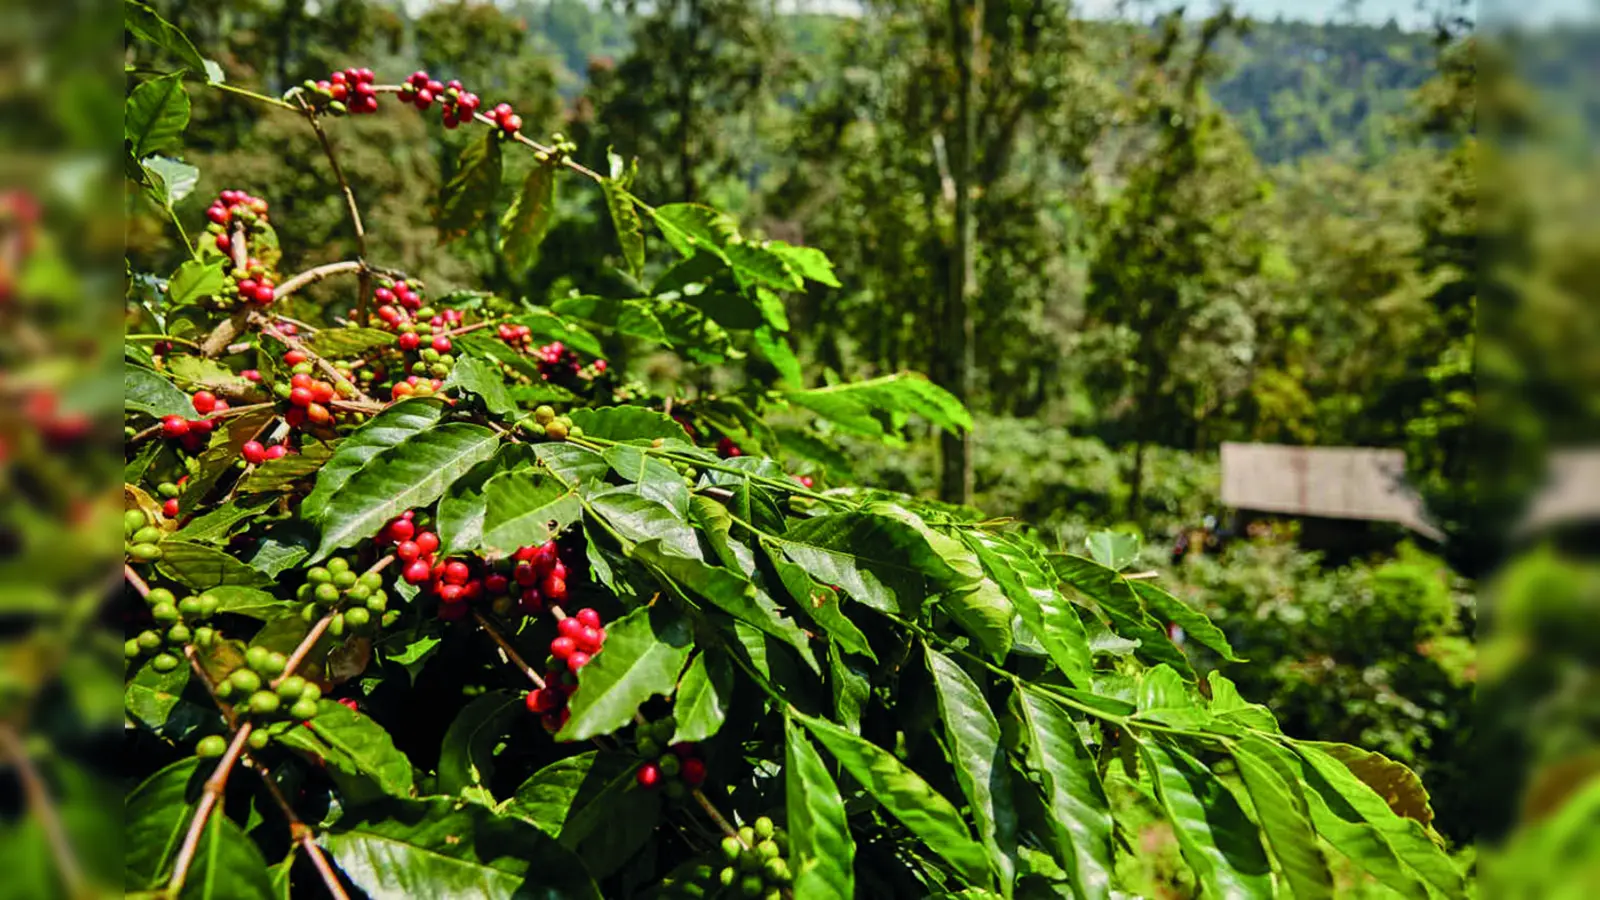 Die Kaffeepflanze ist äußerst sensibel und der richtige Umgang mit ihr ist entscheidend für das Qualitätsergebnis.